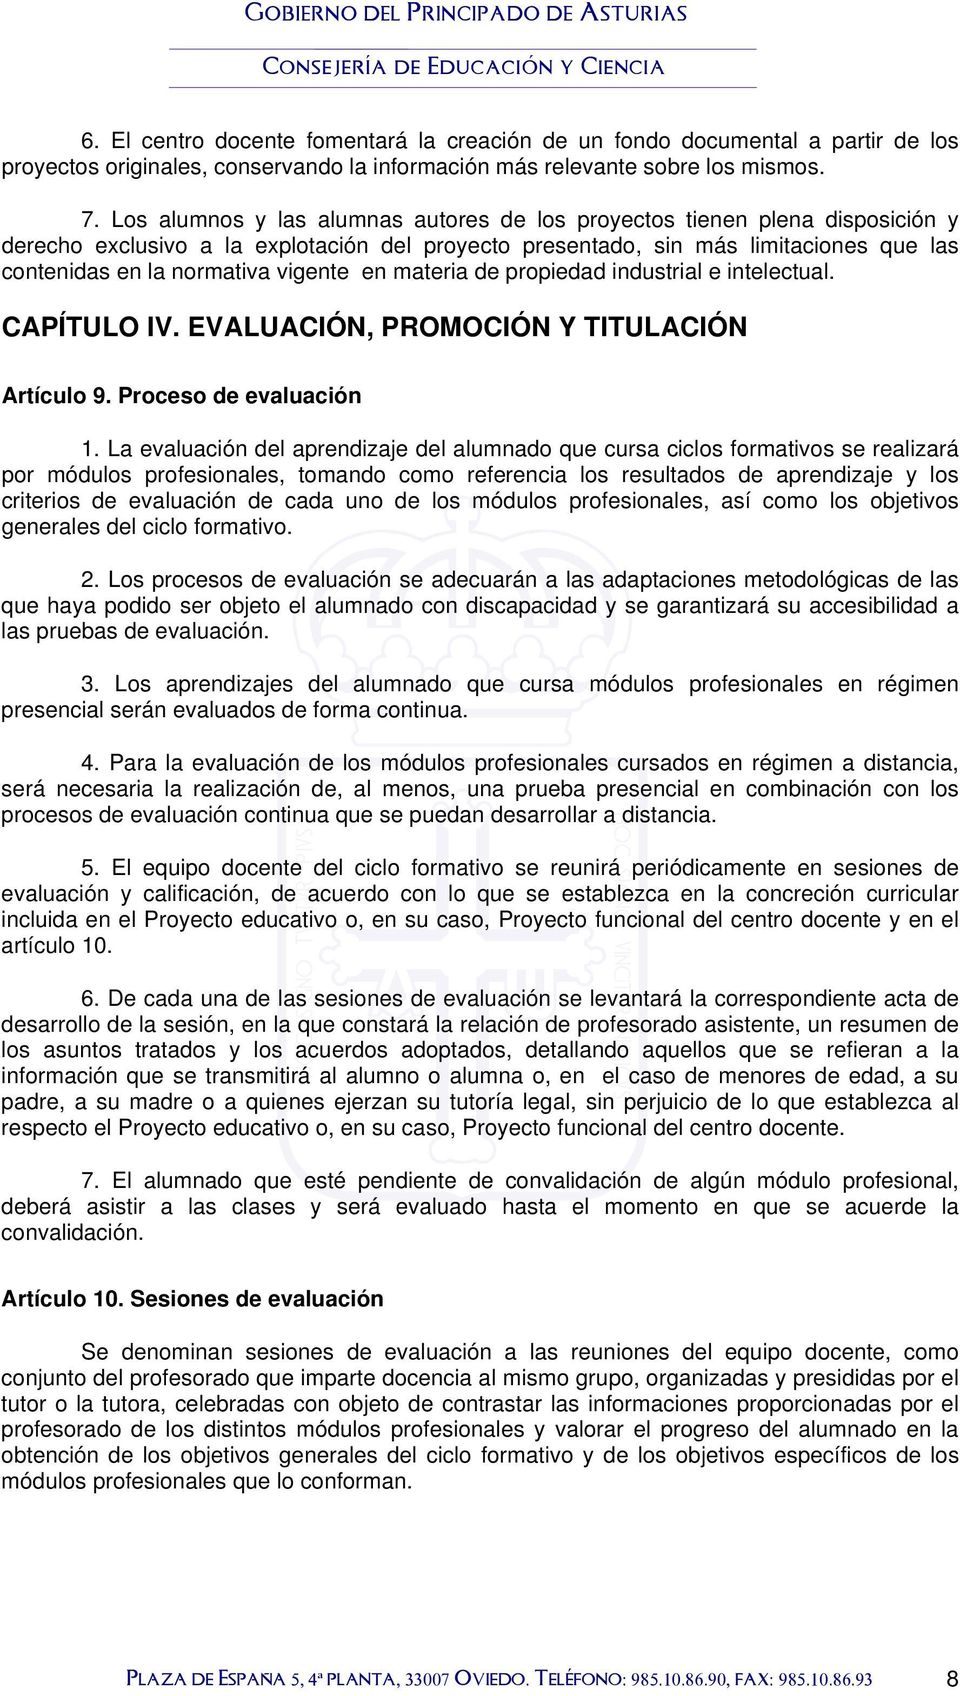 vigente en materia de propiedad industrial e intelectual. CAPÍTULO IV. EVALUACIÓN, PROMOCIÓN Y TITULACIÓN Artículo 9. Proceso de evaluación 1.